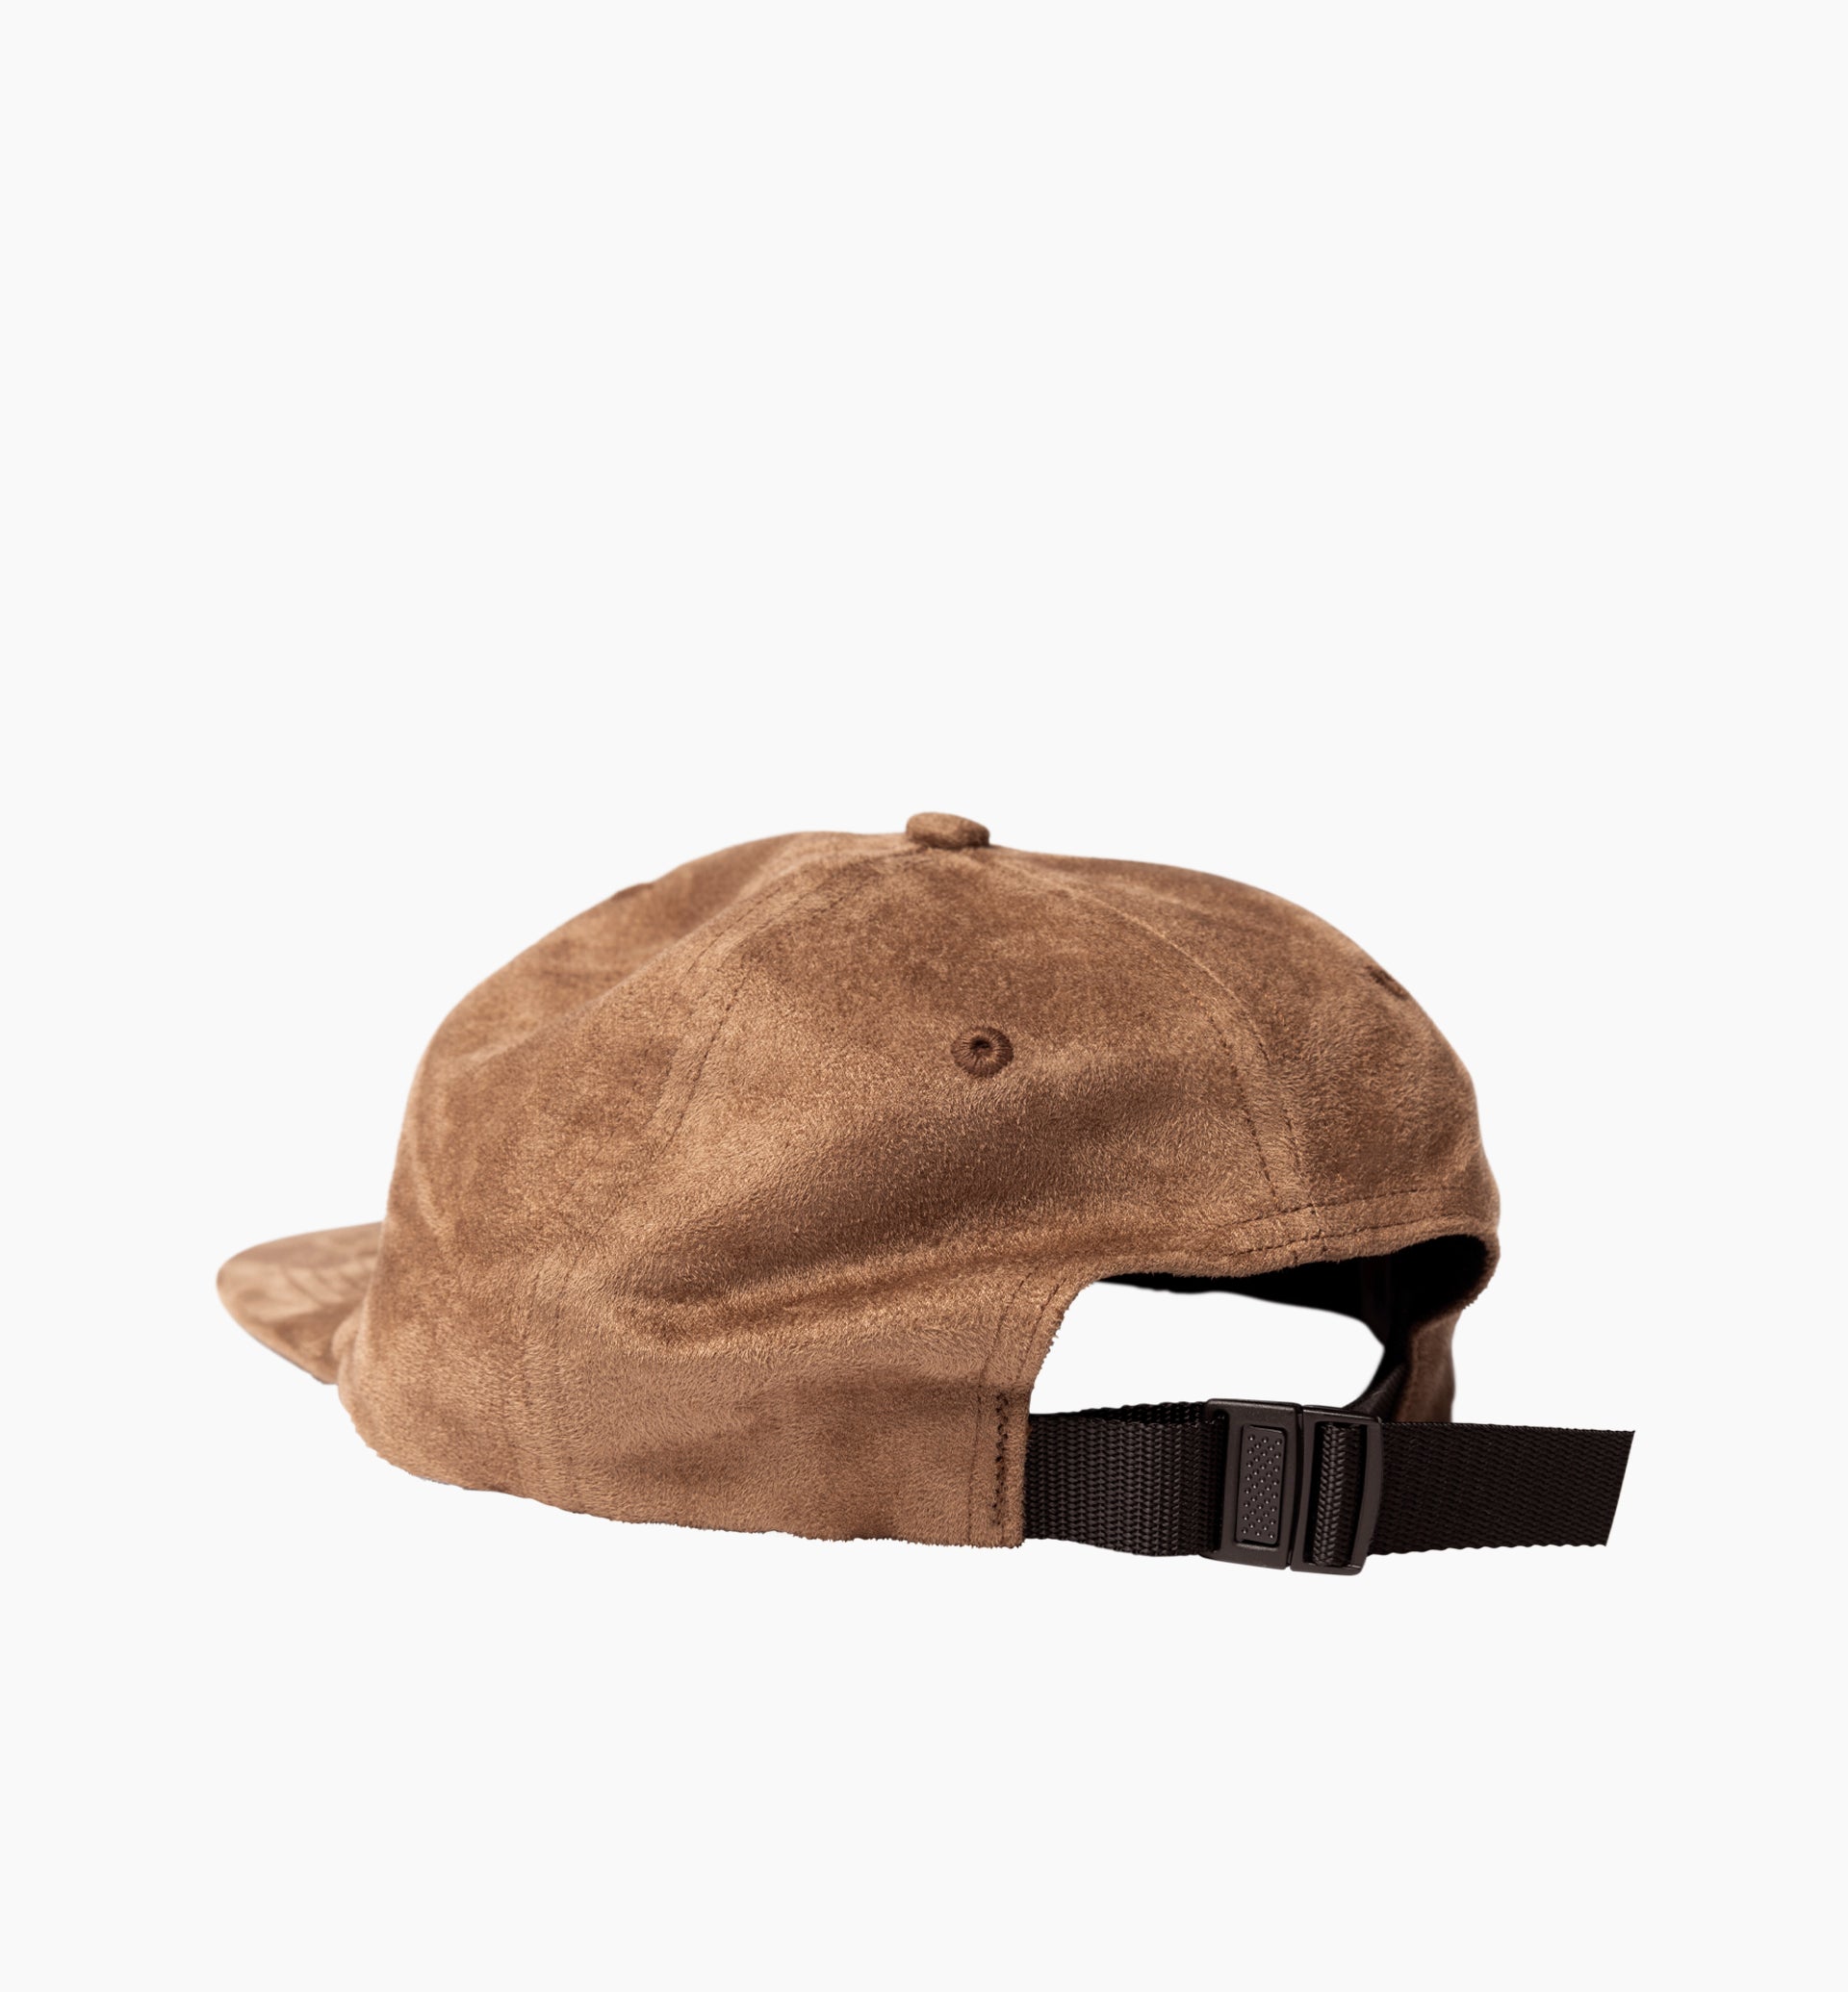 Parra - faux logo 6 panel hat